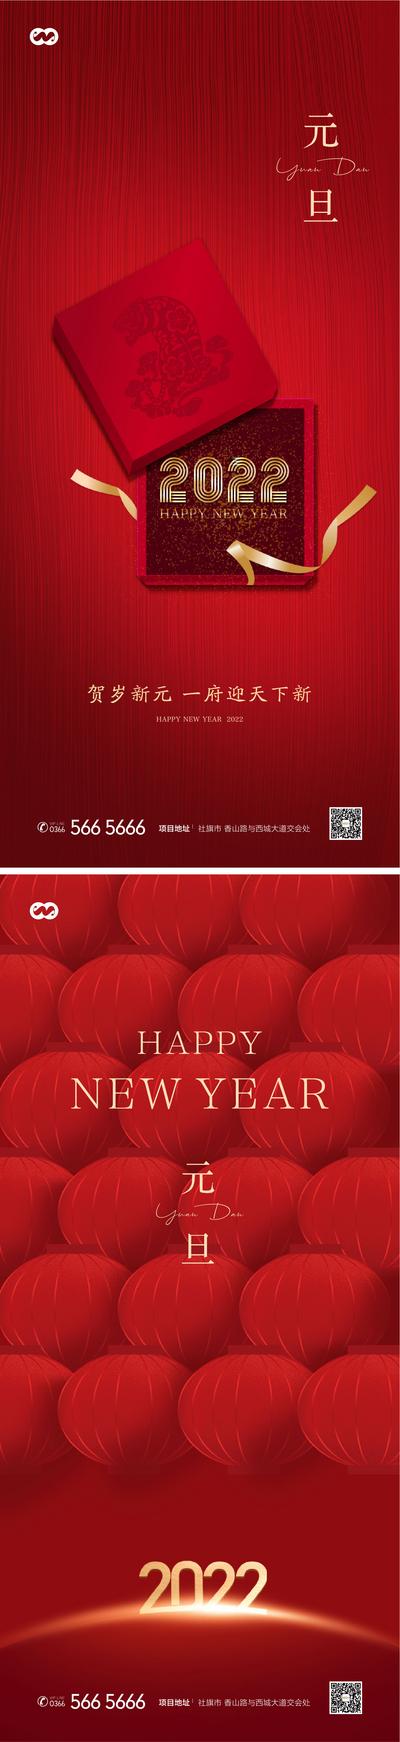 南门网 海报 公历节日  元旦 新年  红金 礼盒 灯笼 系列